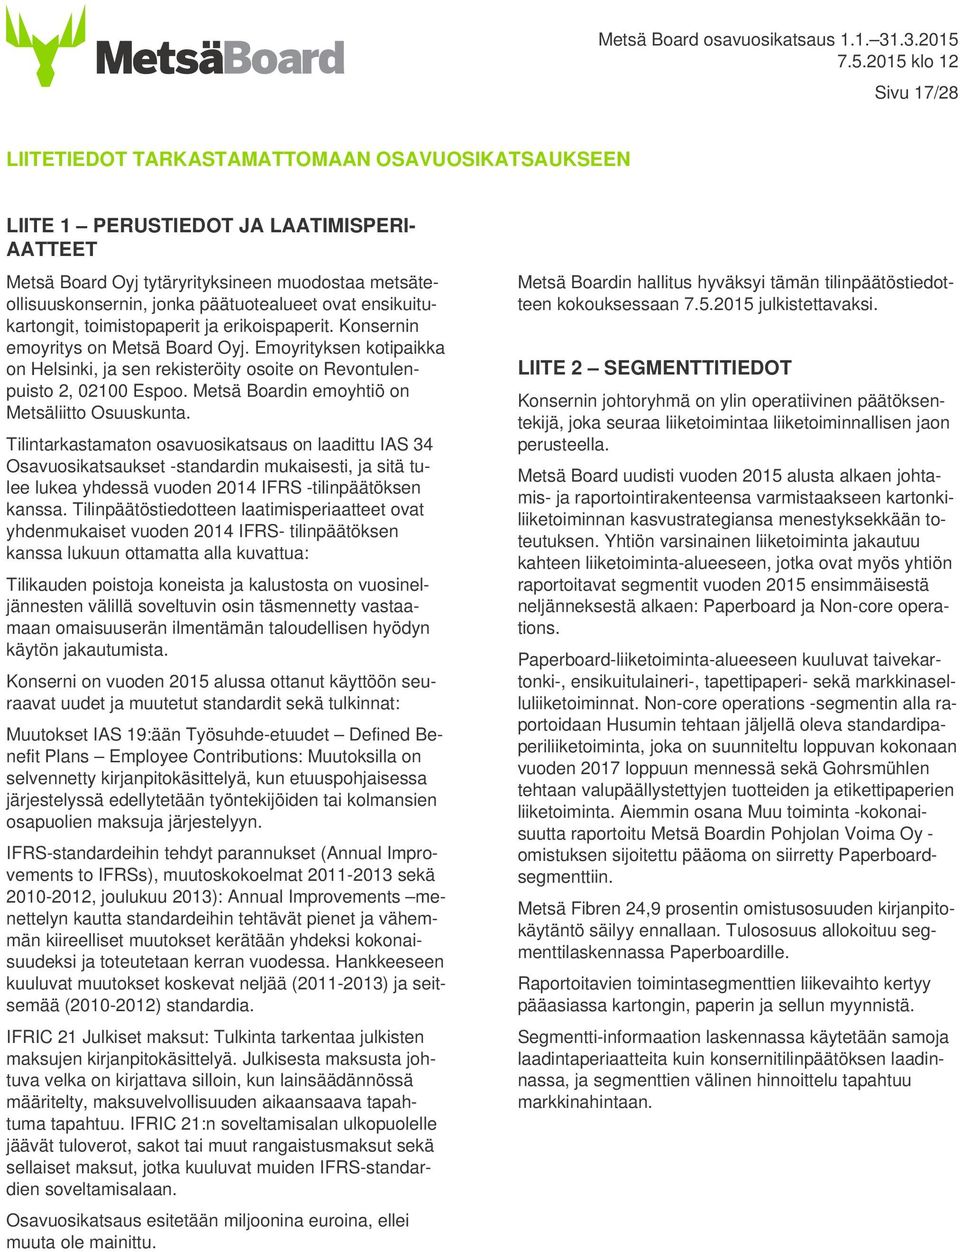 Metsä Boardin emoyhtiö on Metsäliitto Osuuskunta.